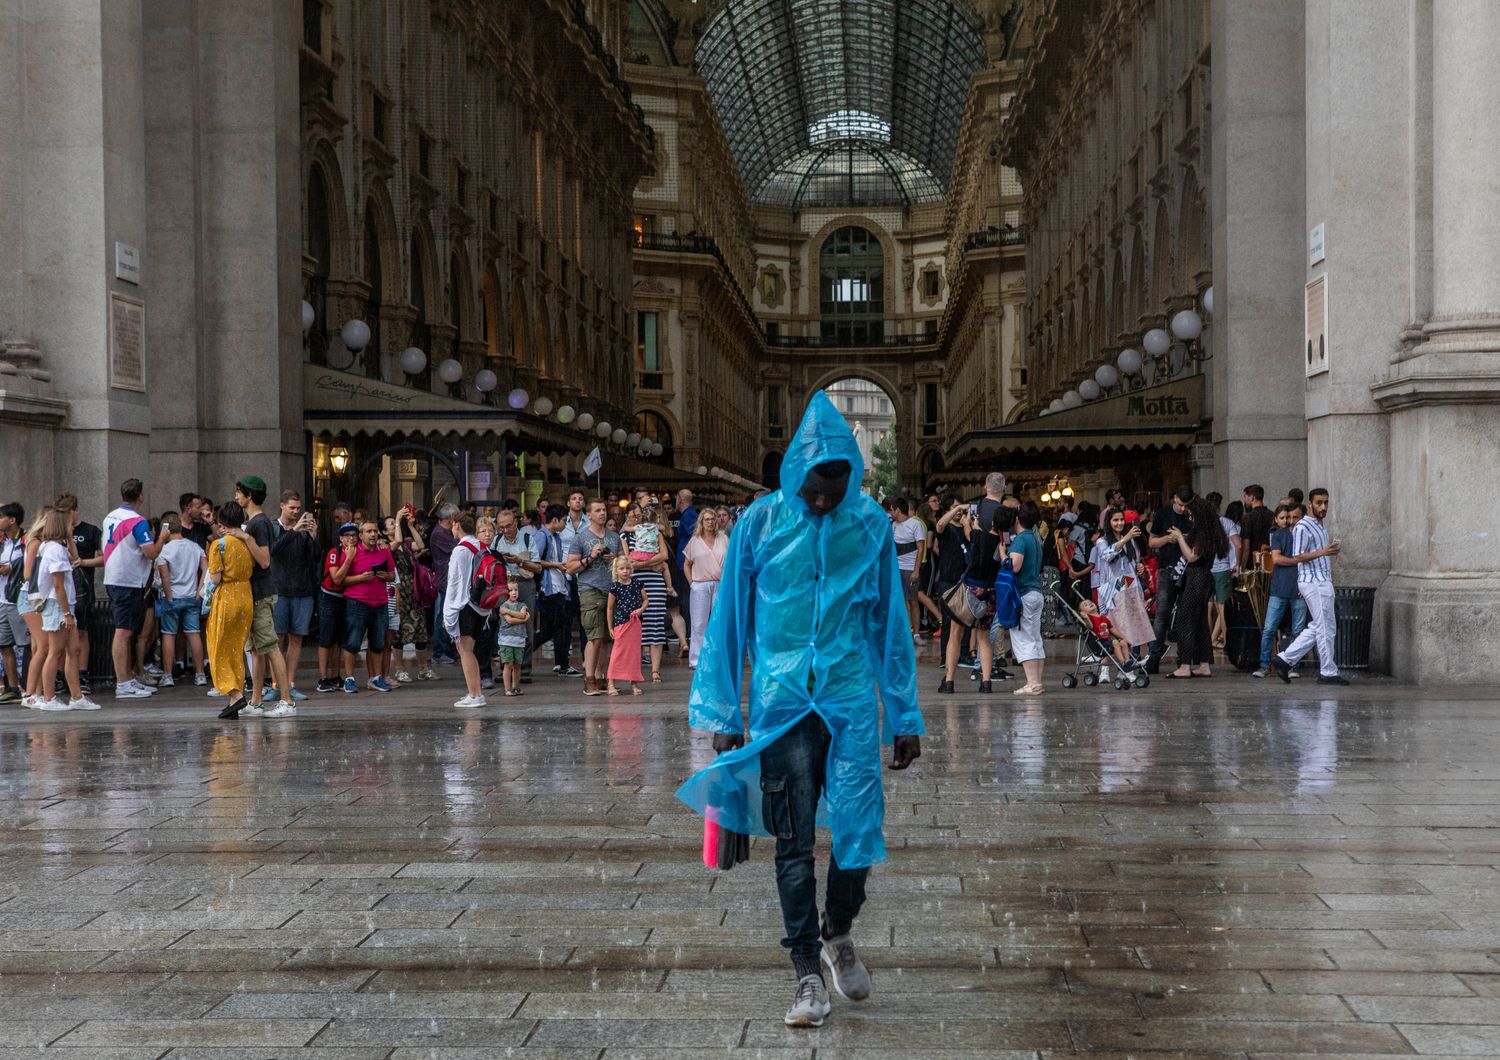 Pioggia a Milano&nbsp;